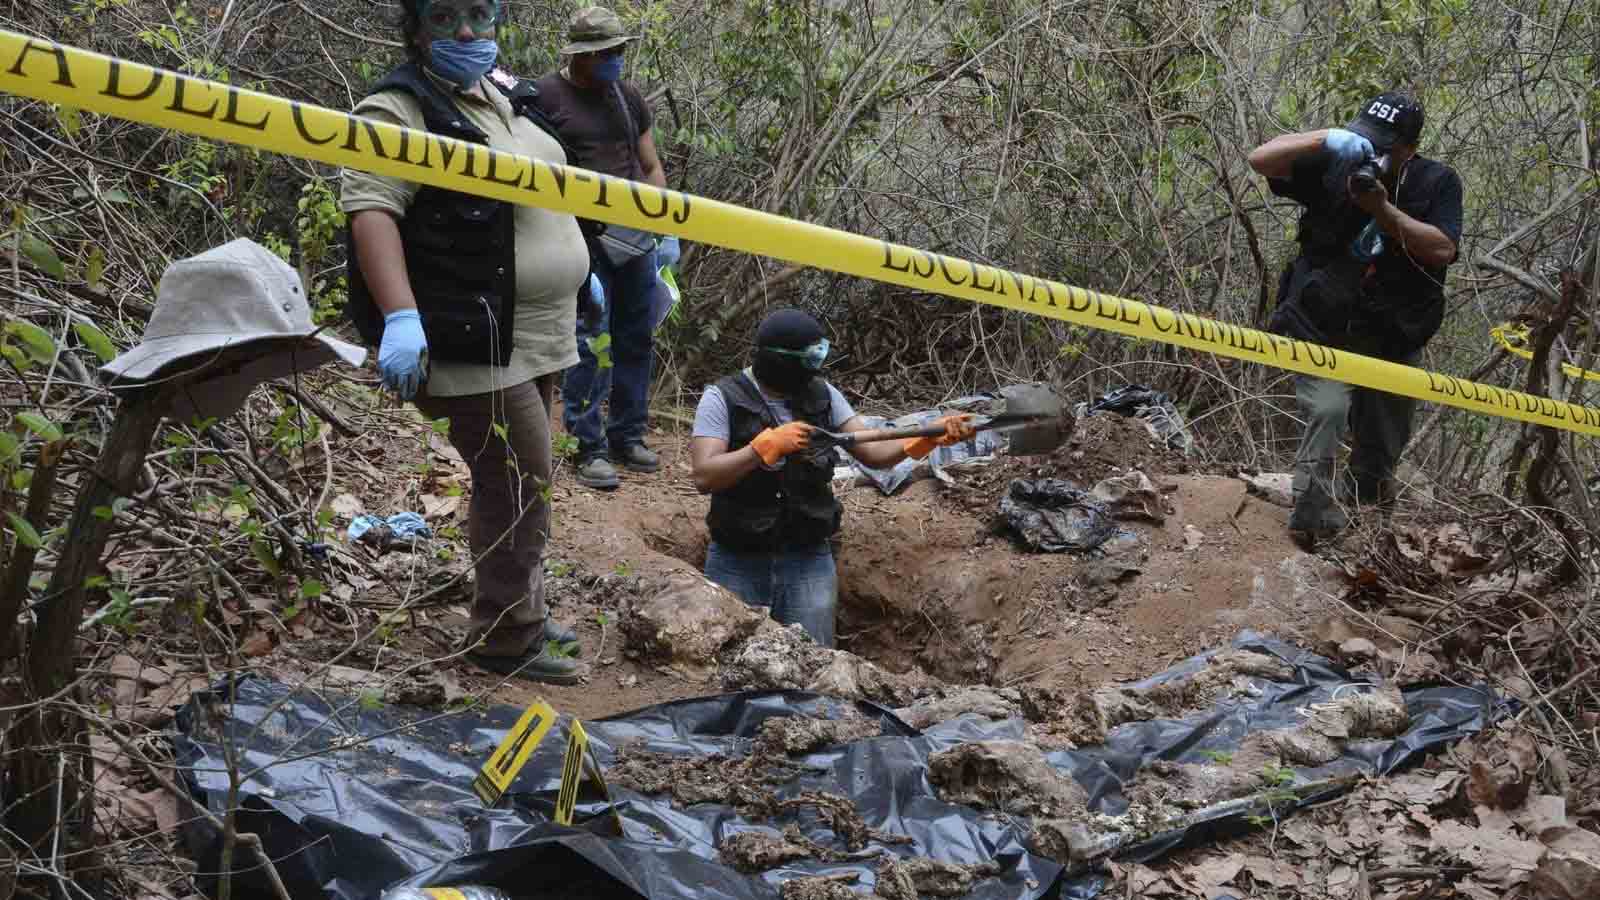 Con el hallazgo suman 26 cadáveres encontrados en ese mismo municipio en las últimas dos semanas, según señaló el fiscal de la entidad